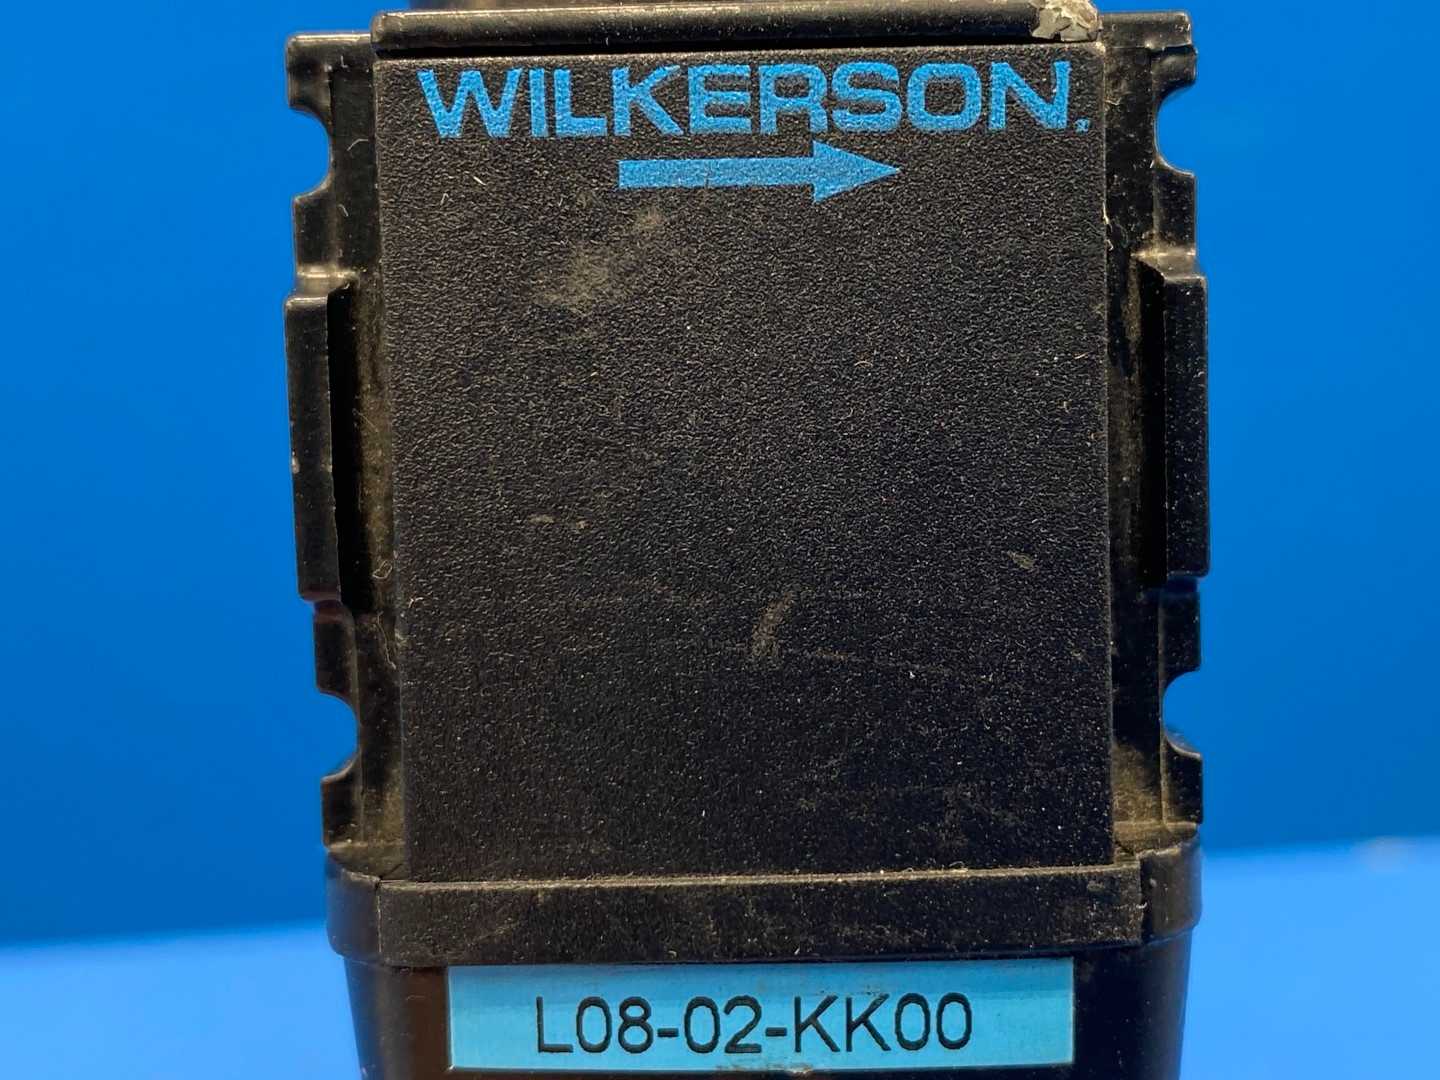 WILKERSON L08-02-KK00 Compressed Air Lubricator